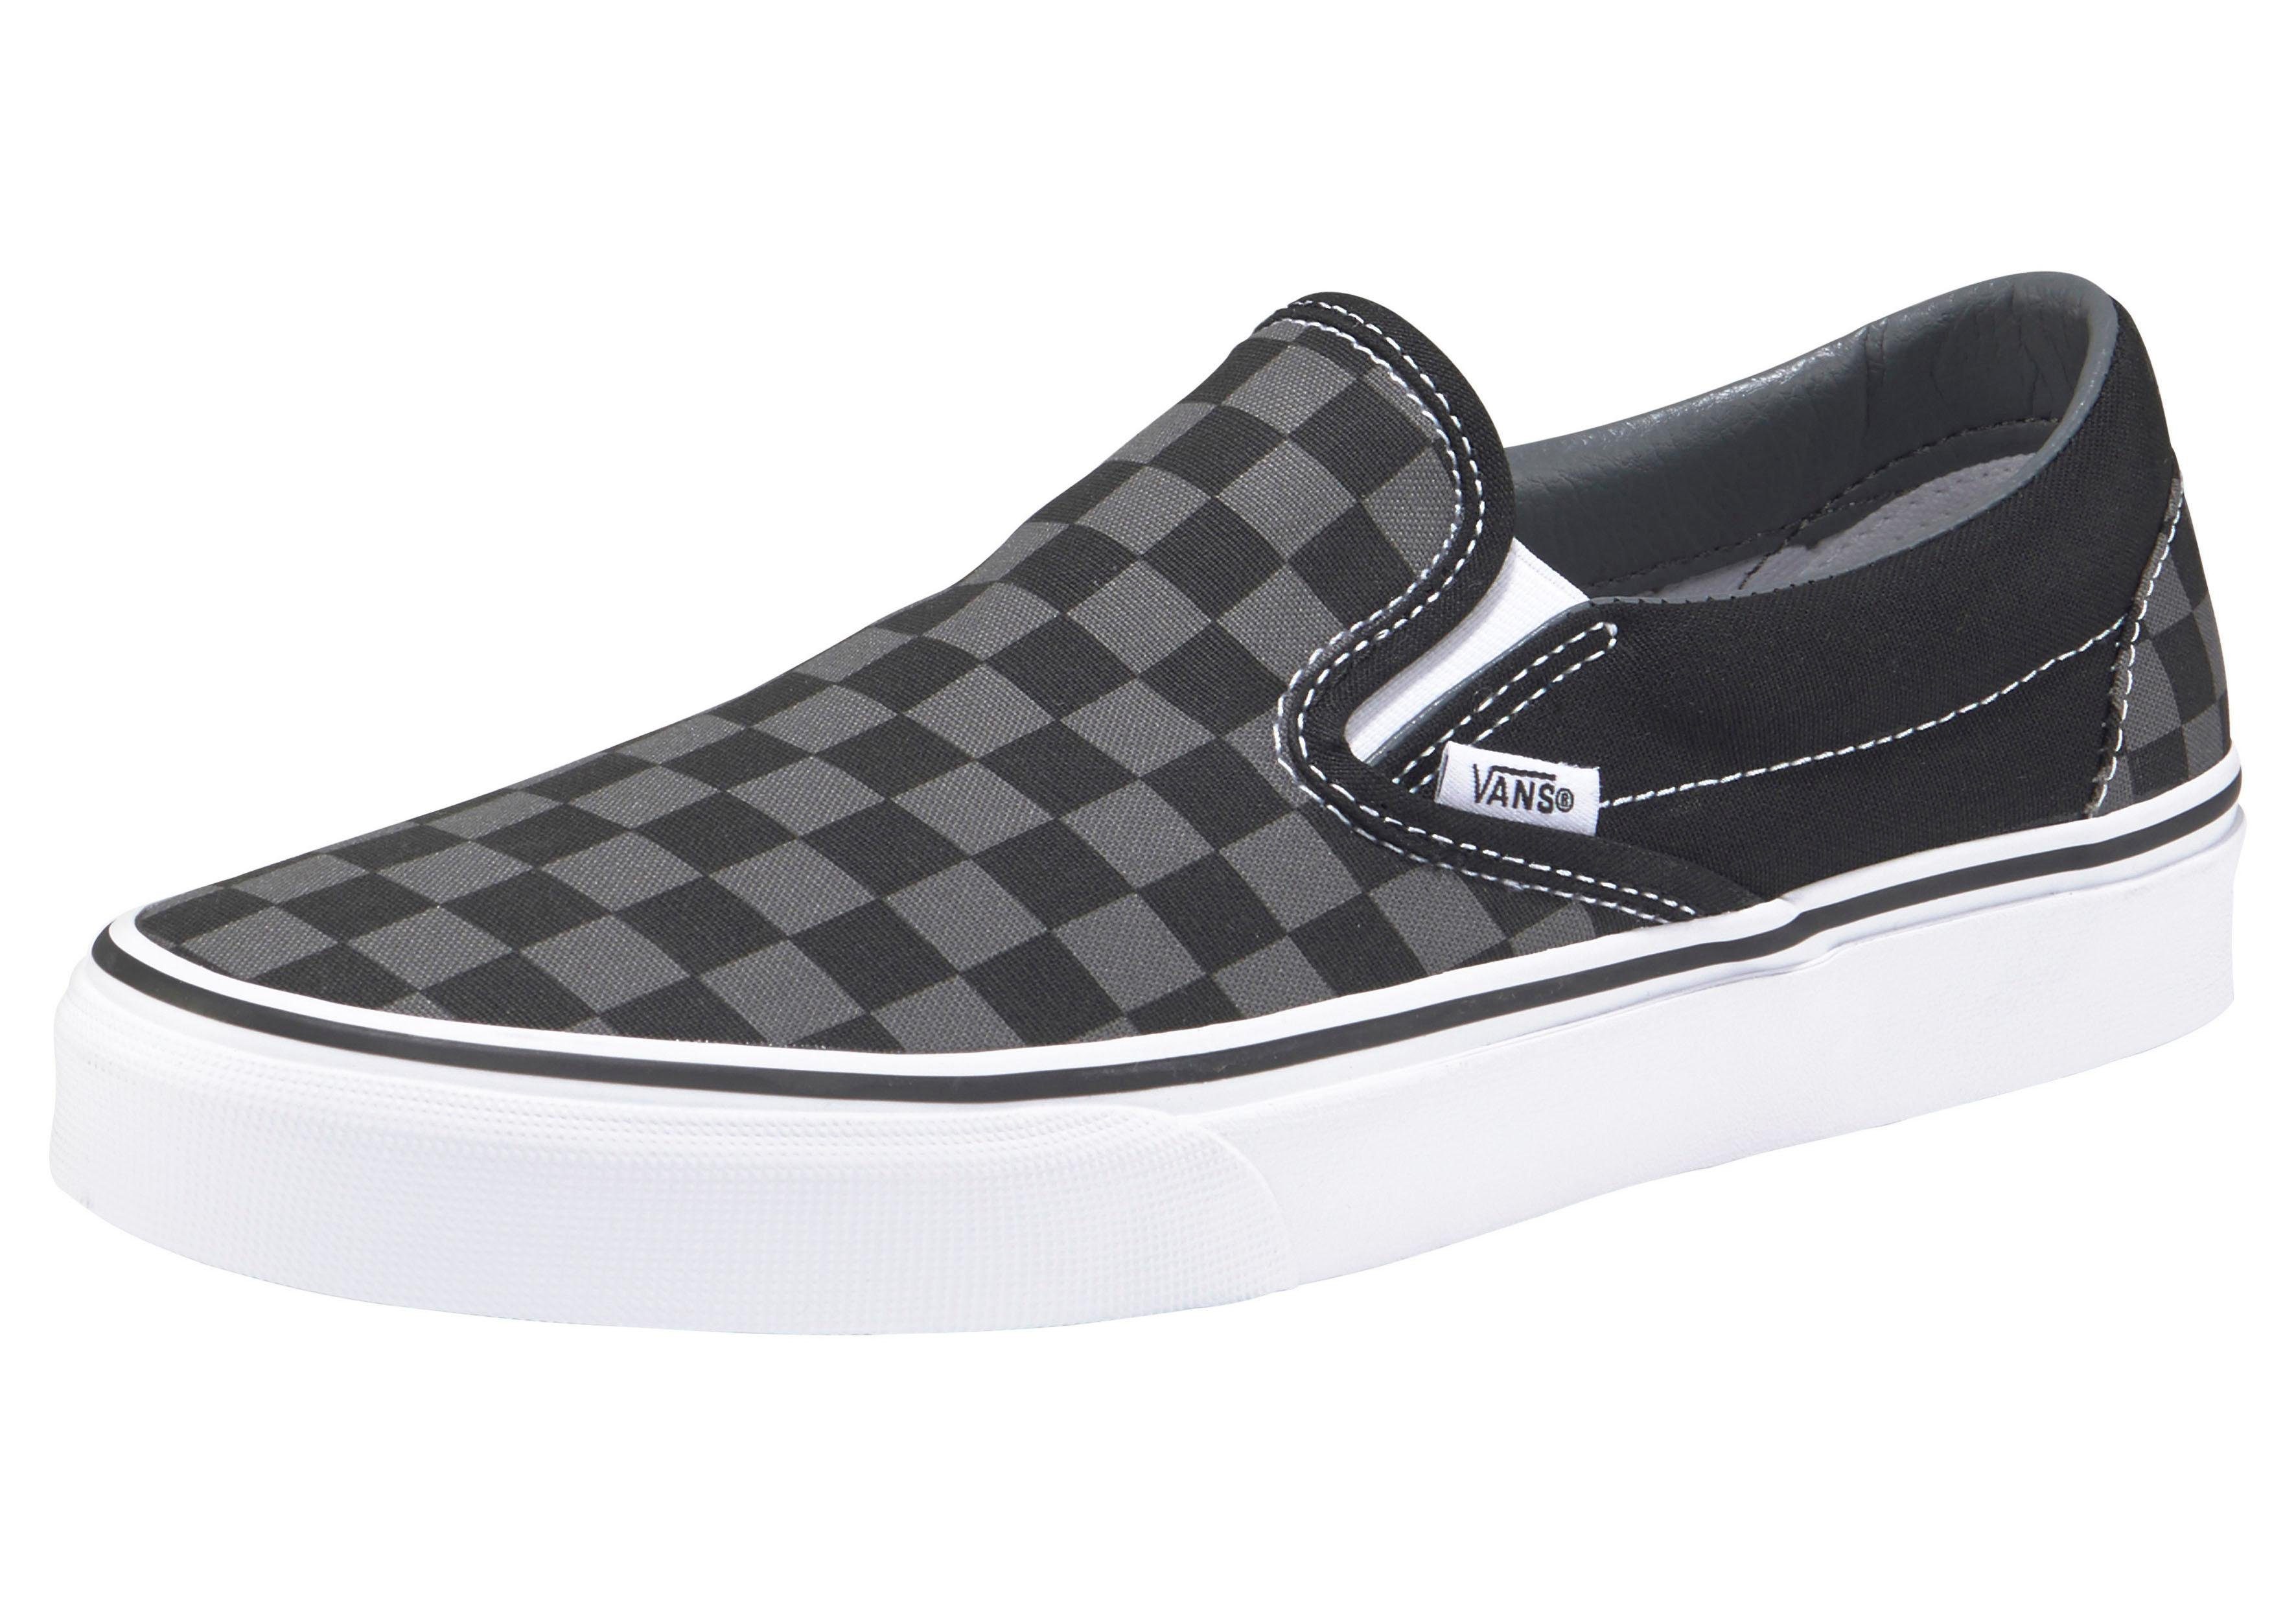 Vans Checkerboard Classic Slip-On Slip-On Sneaker